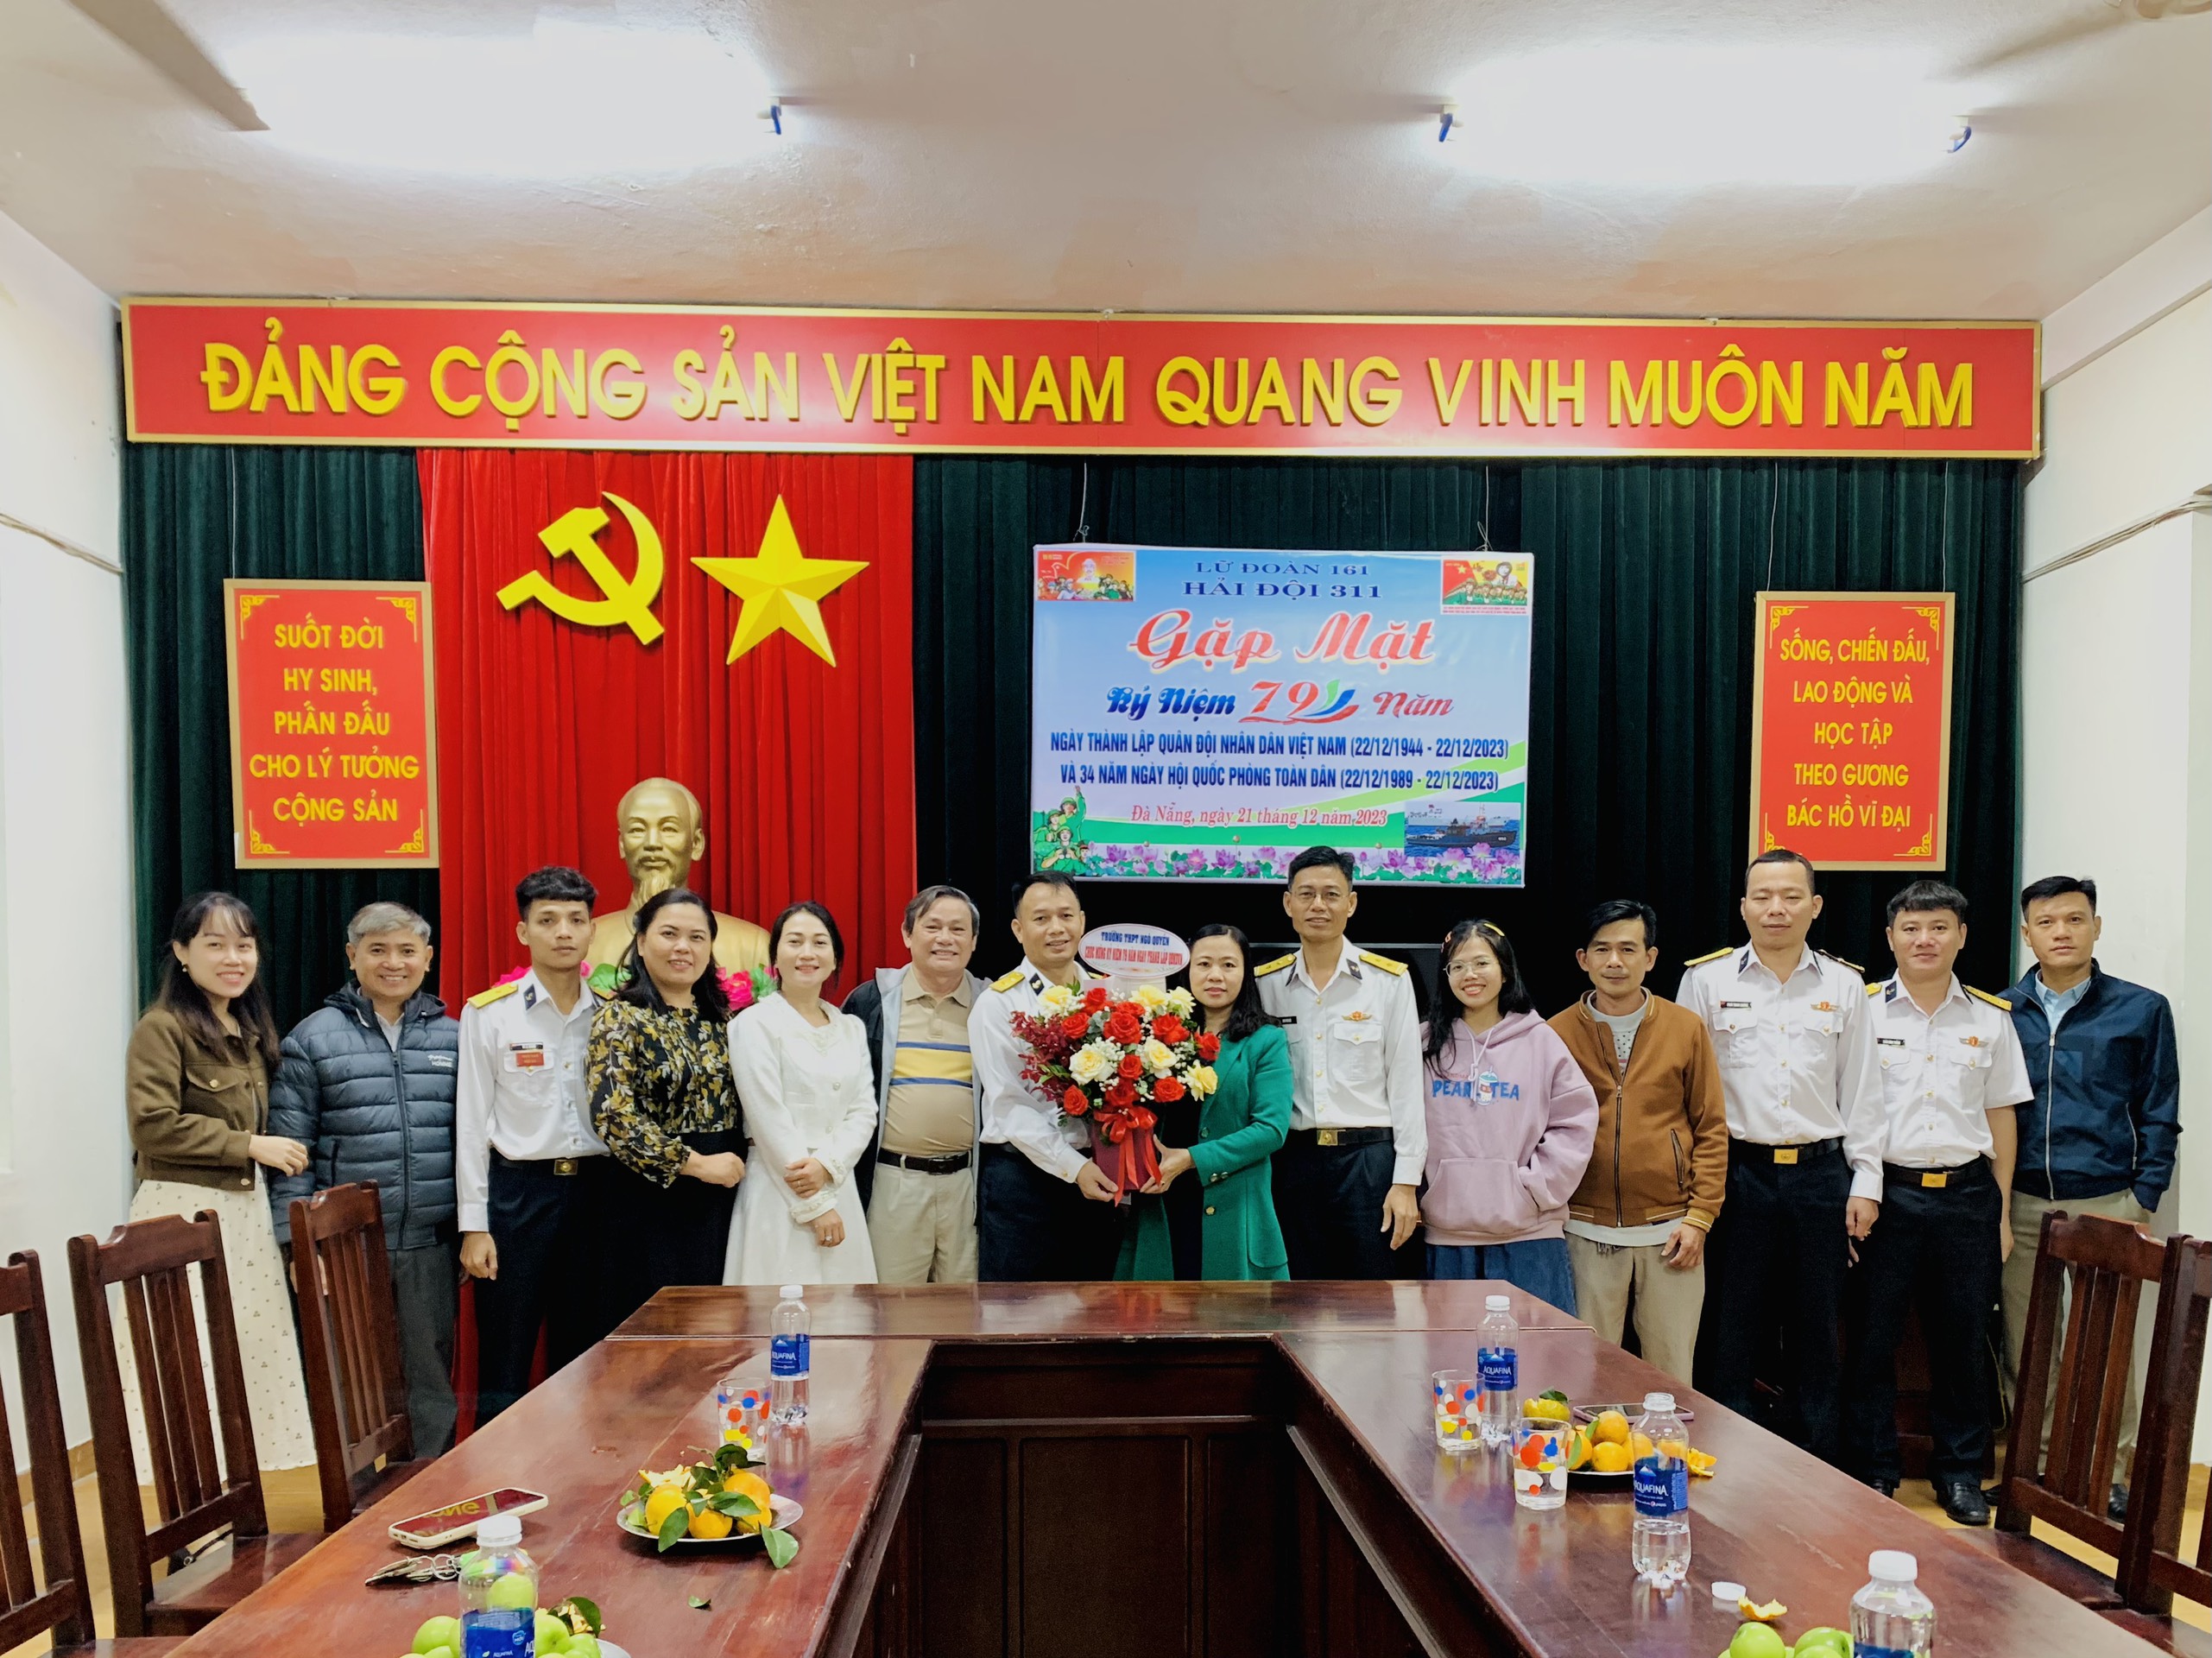 Chào mừng kỉ niệm 79 năm Ngày thành lập Quân đội nhân dân Việt Nam